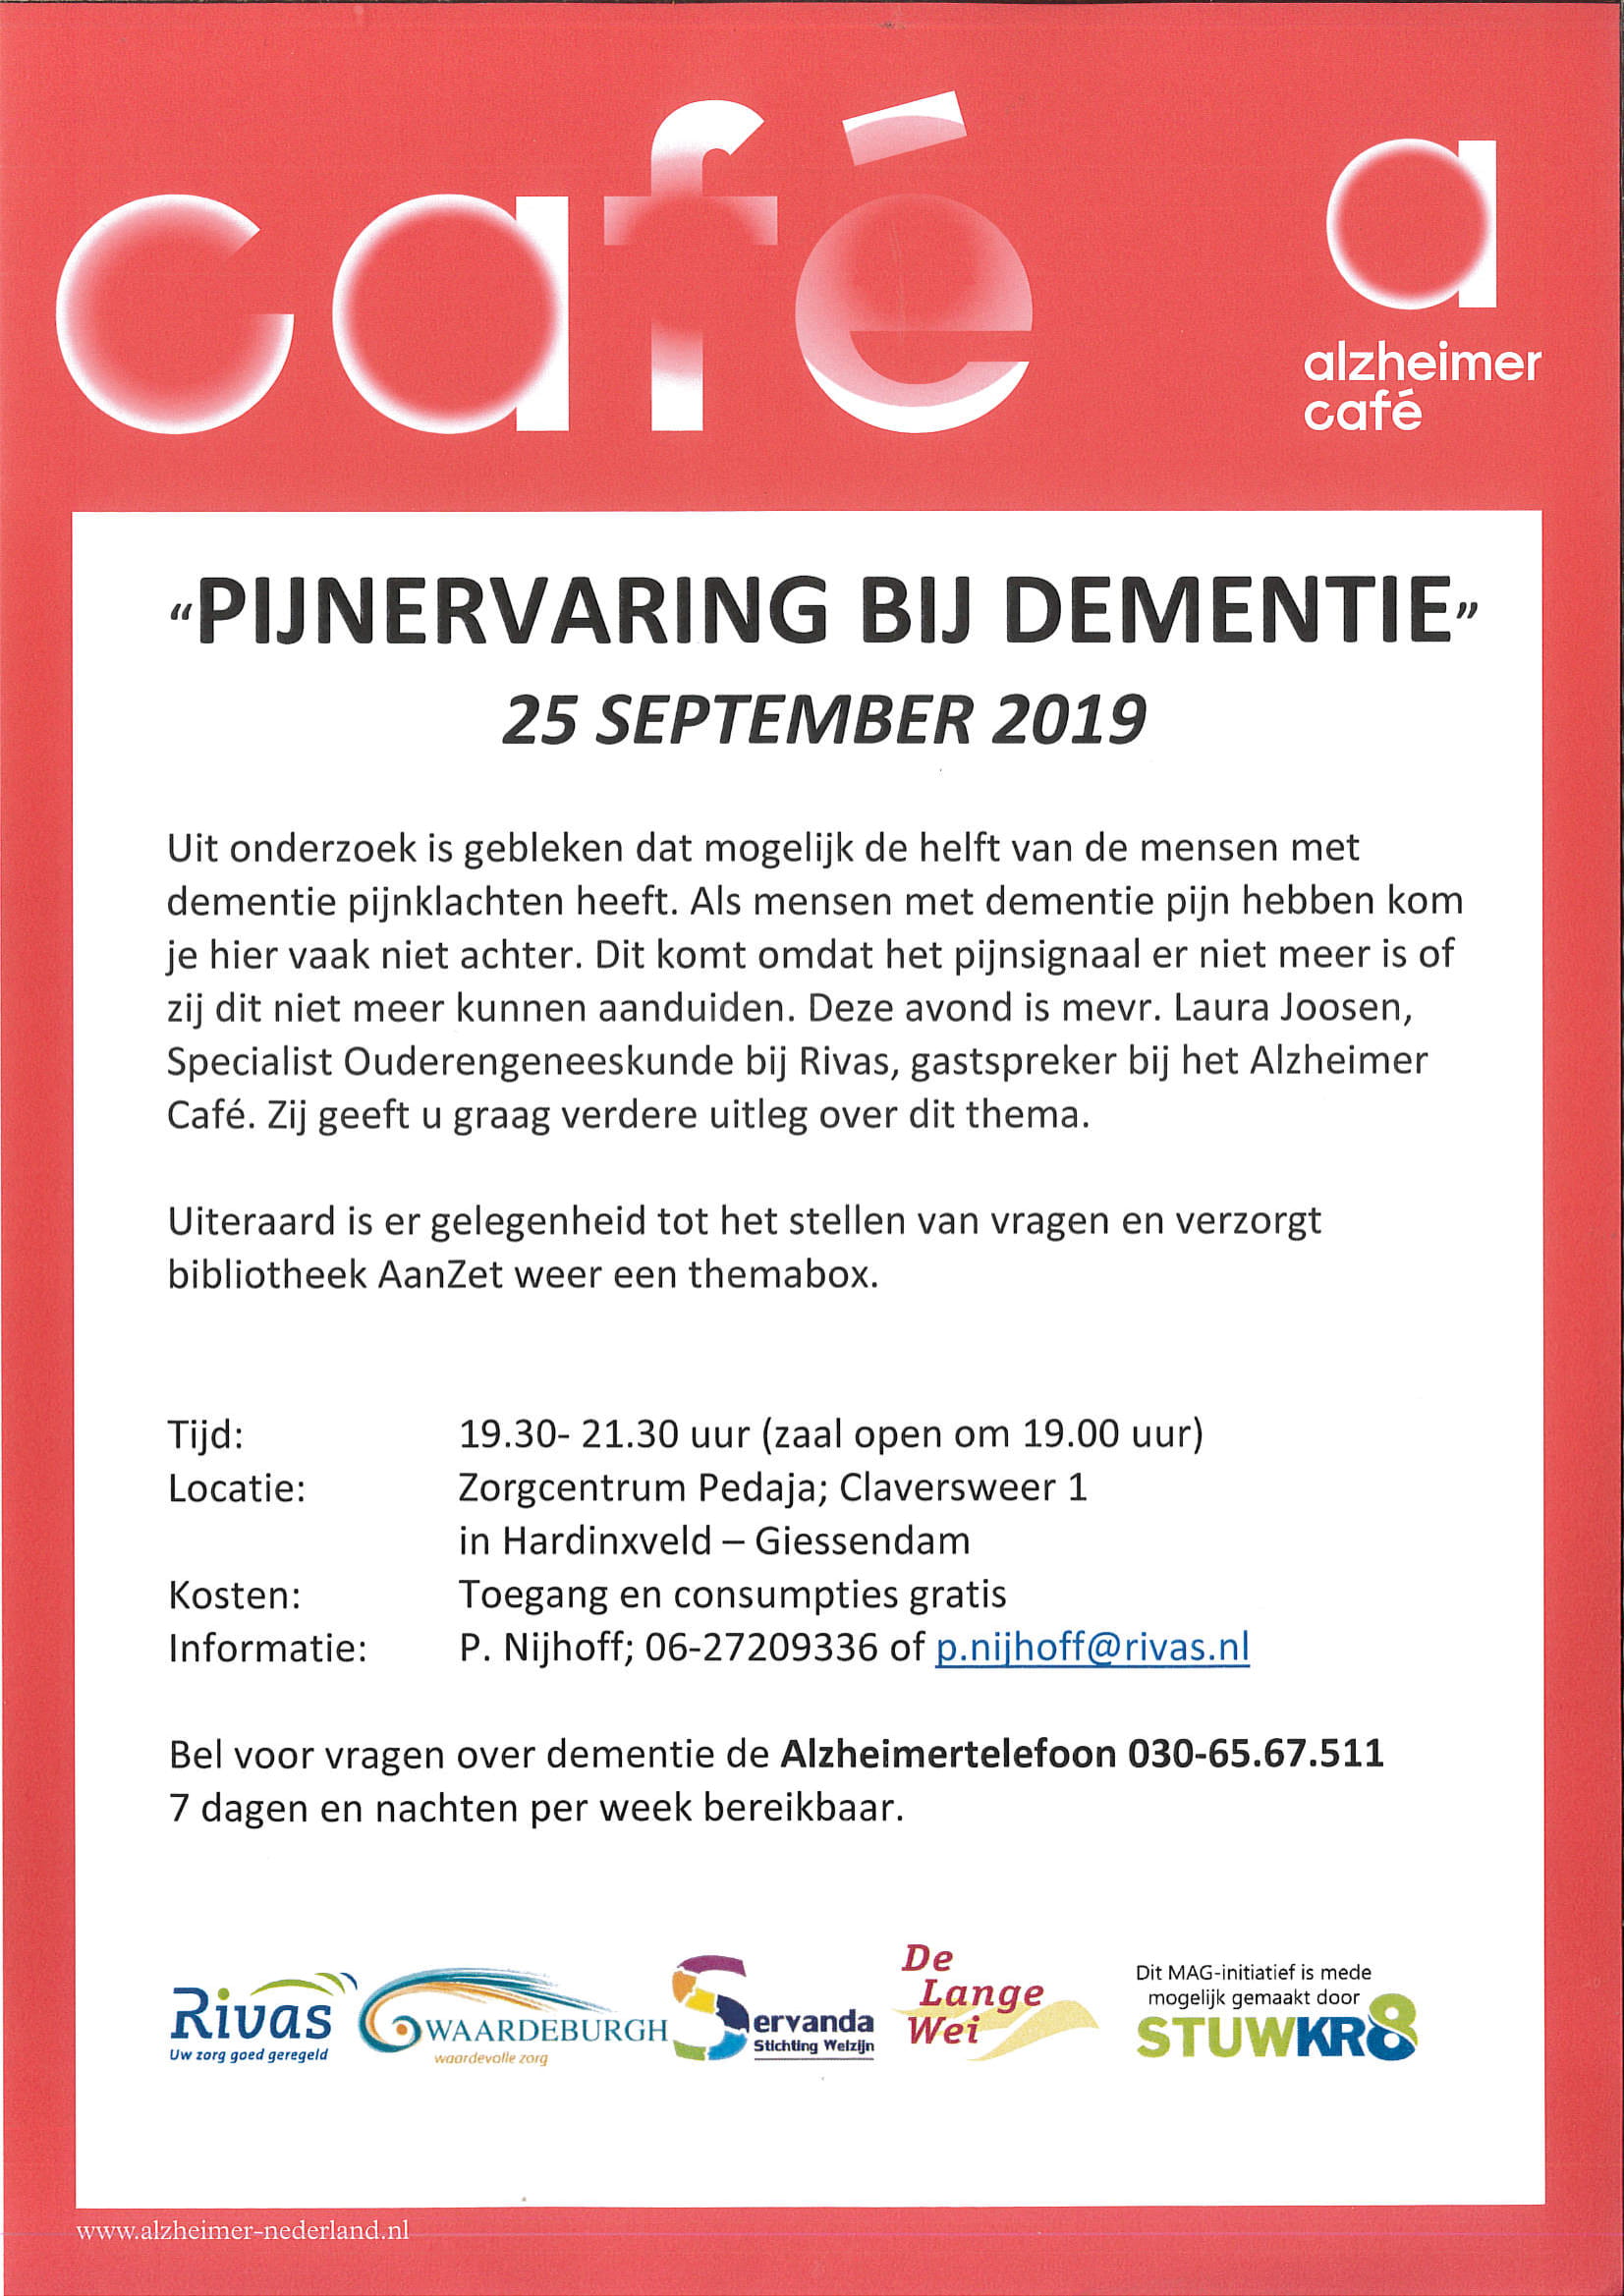 2019 09 25 Alzheimer Café pijnervaring bij dementie 1